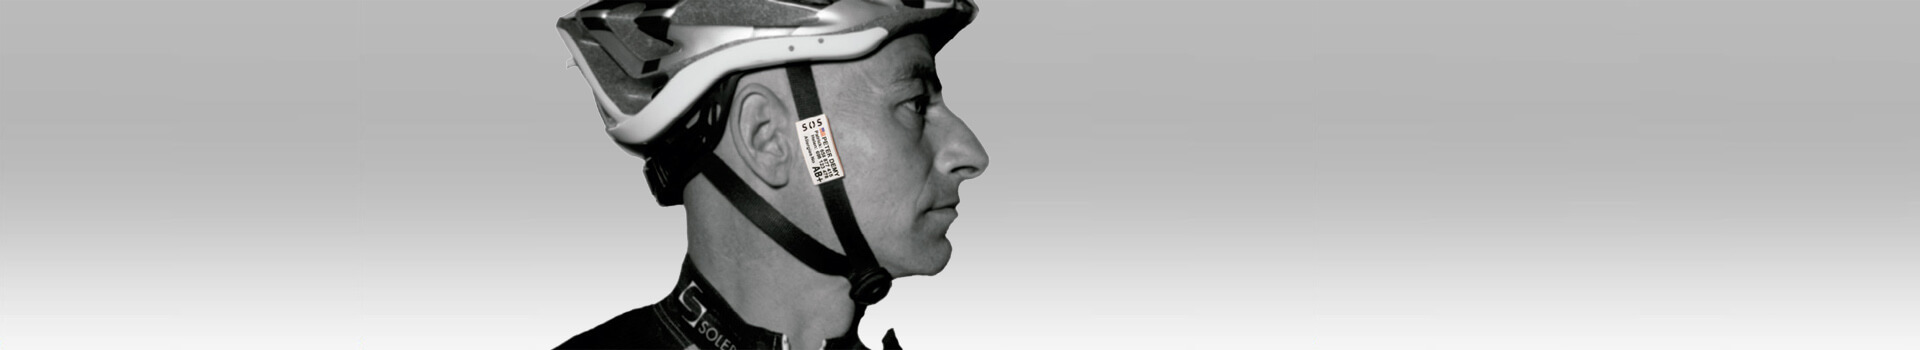 Placa identificativa de seguridad para ciclistas